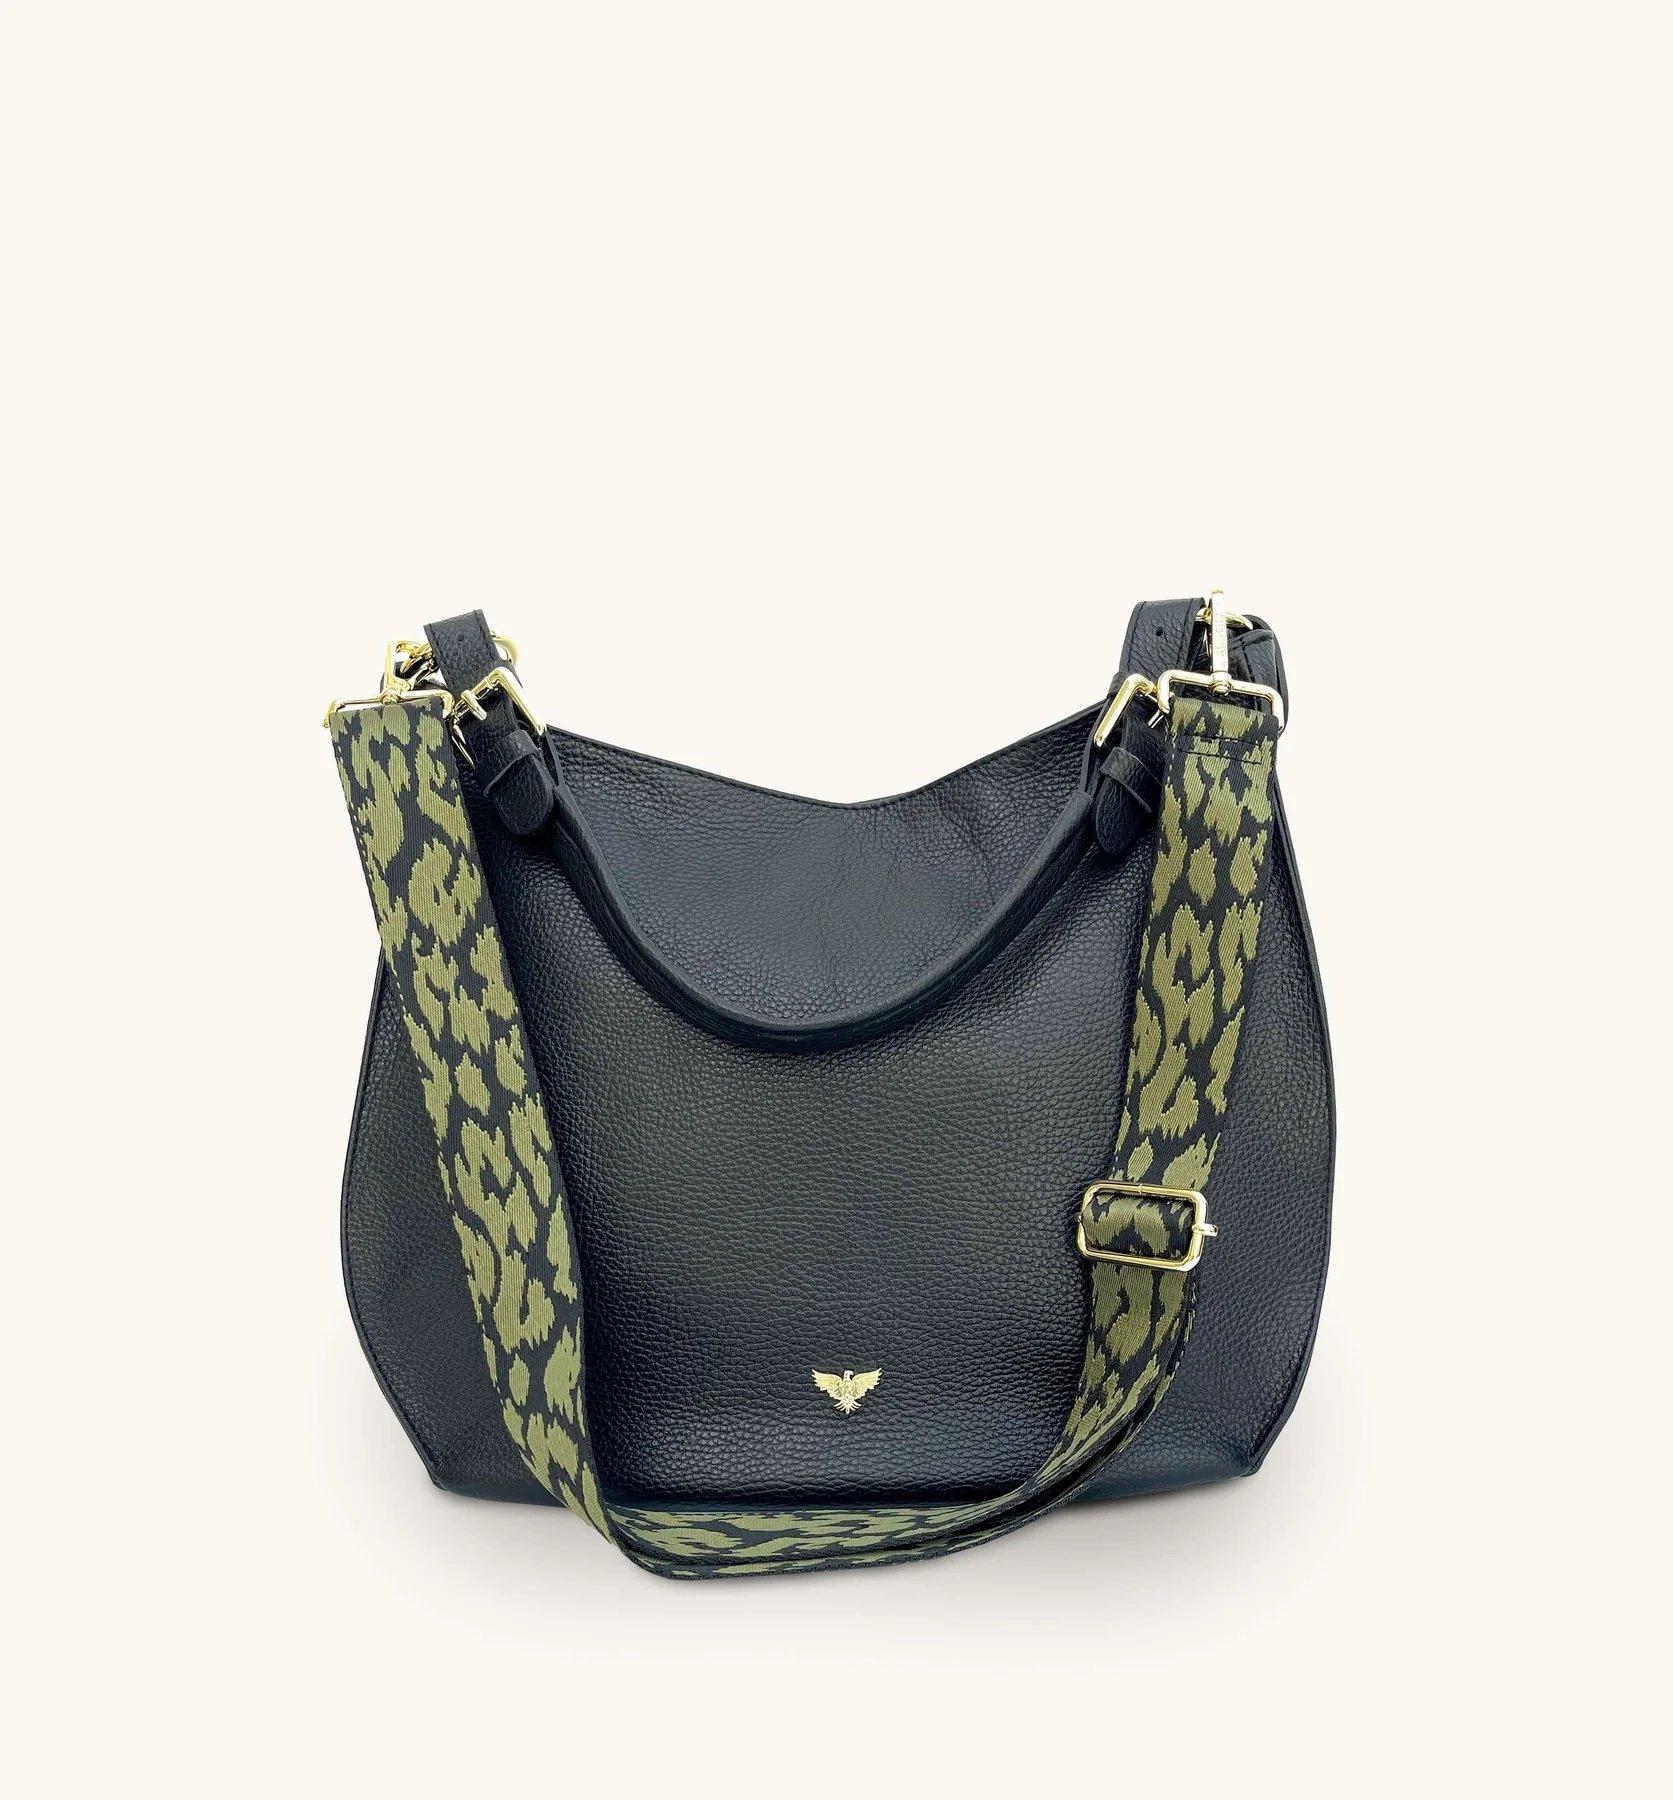 Черная кожаная сумка Harriet с ремешком в форме гепарда оливково-зеленого цвета Apatchy London, черный кожаная сумка из италии